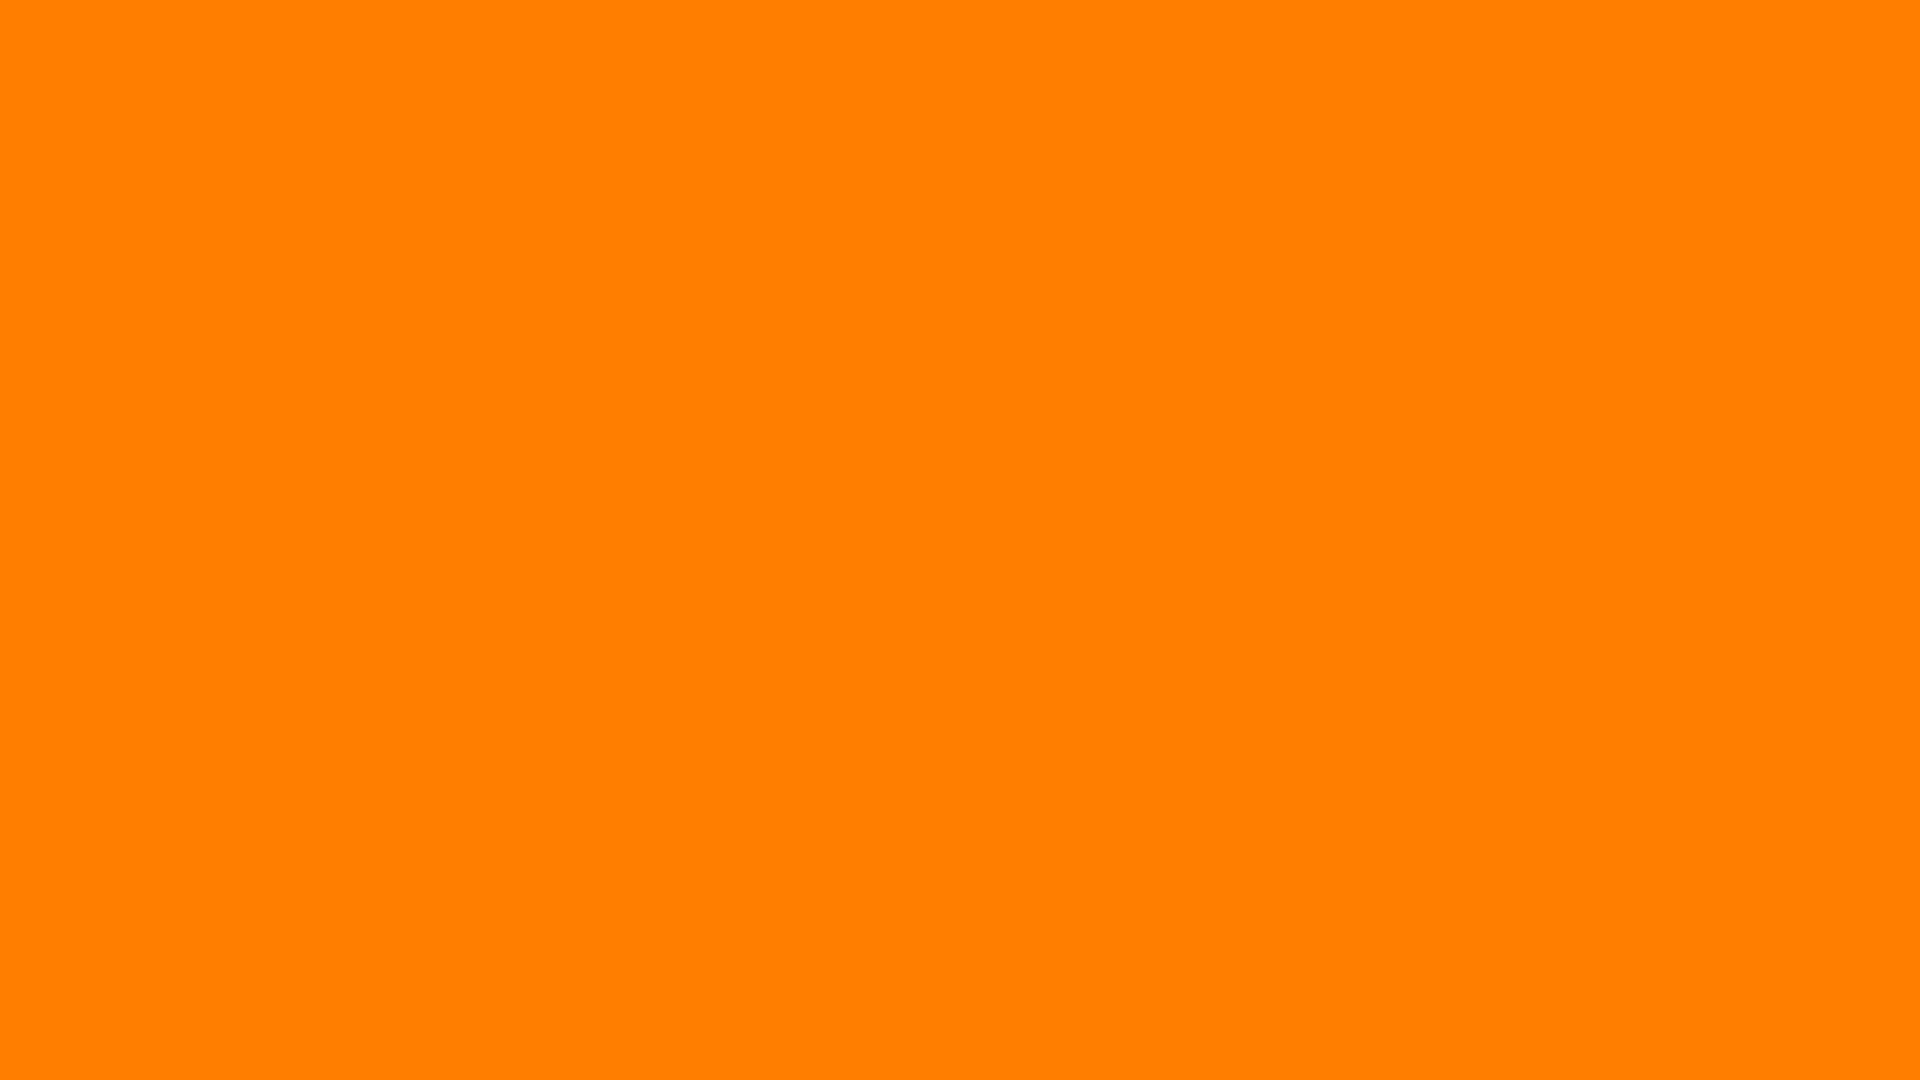 Hình nền màu cam: Hình nền màu cam mang đến sự sáng tạo và lạ mắt cho màn hình của bạn. Thiết kế cực kỳ độc đáo và thú vị, hình ảnh liên quan sẽ tạo ra một cảm giác mới lạ và đem đến cho bạn ý tưởng hoàn toàn mới về trang trí màn hình của mình.